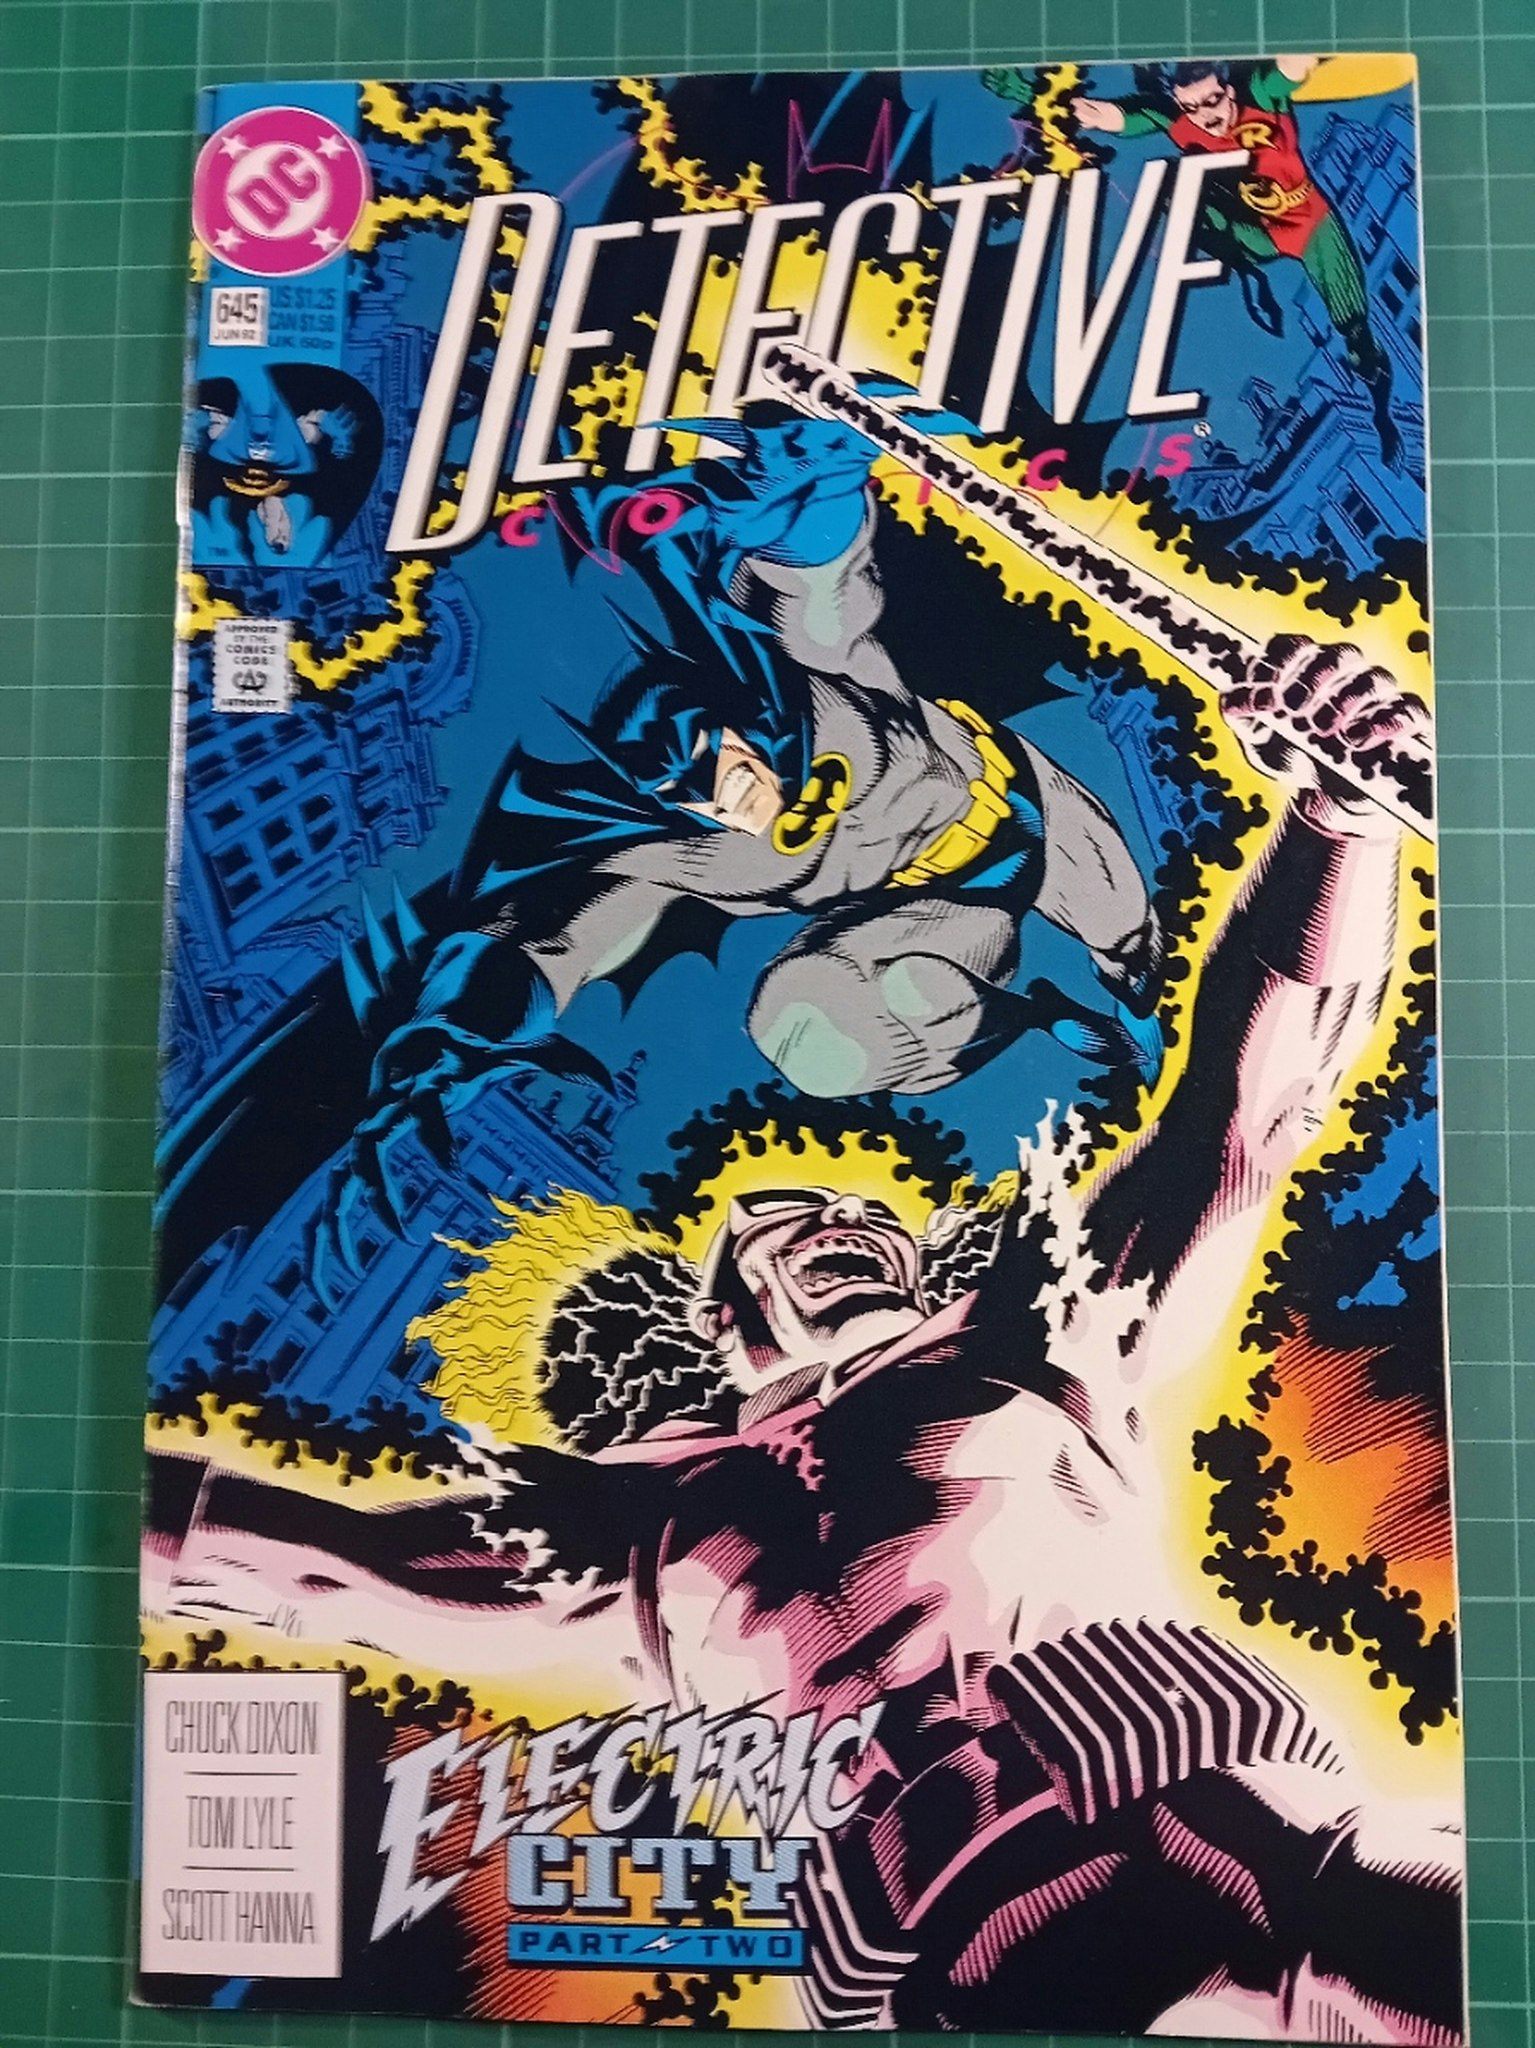 Detective Comics #645